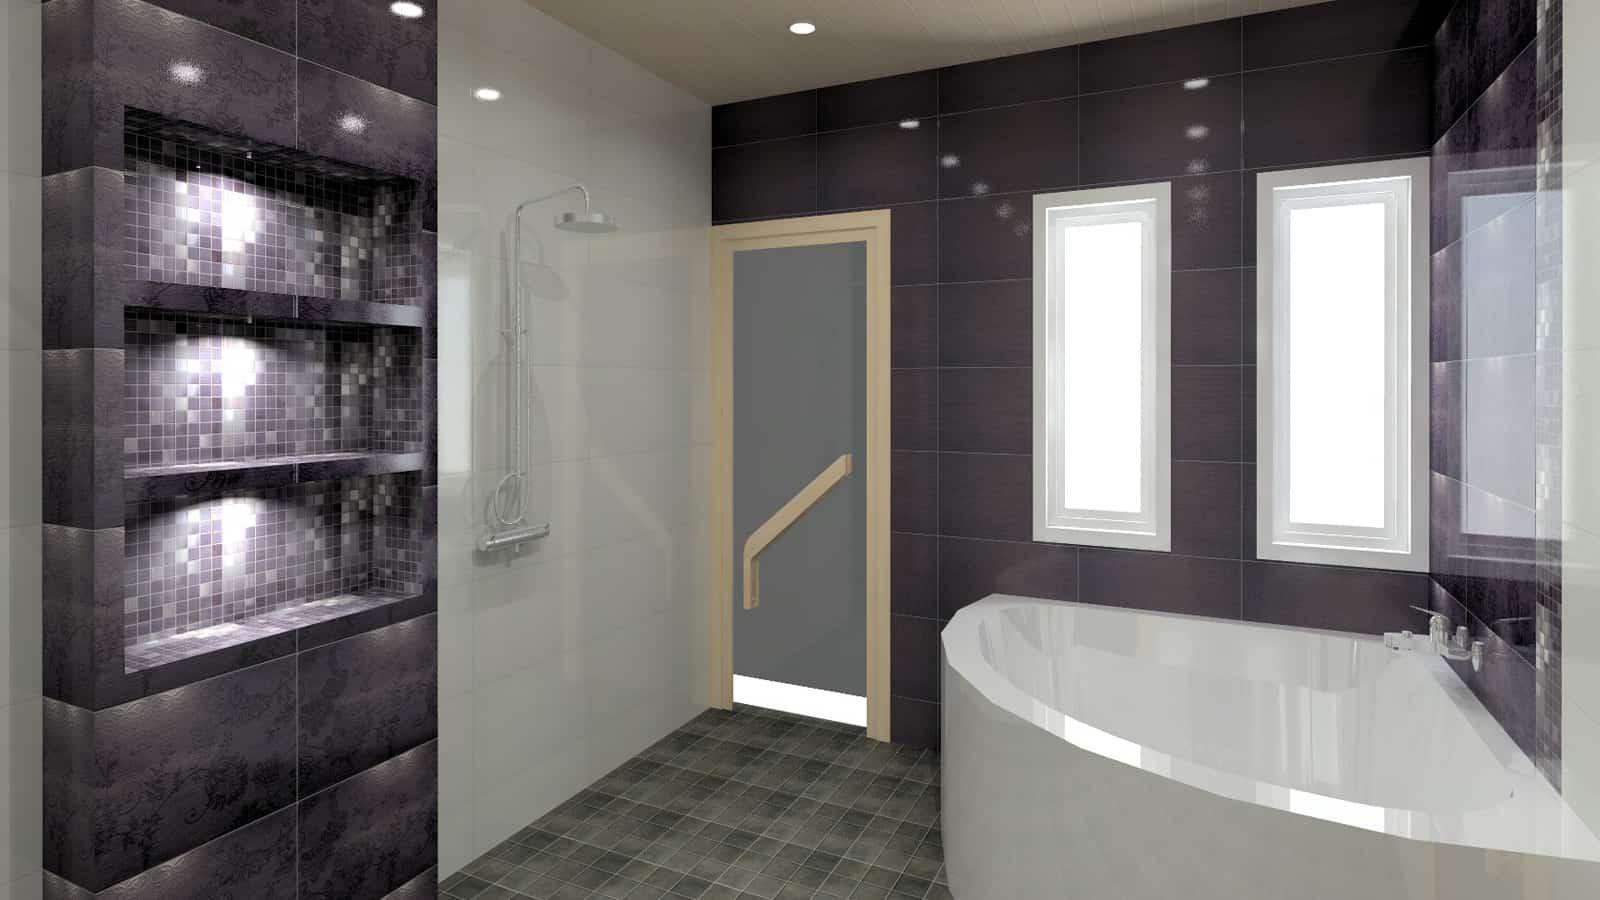 Tehosteväreillä luodaan tyylikästä ilmettä ja luksusta kylpyhuoneeseen.